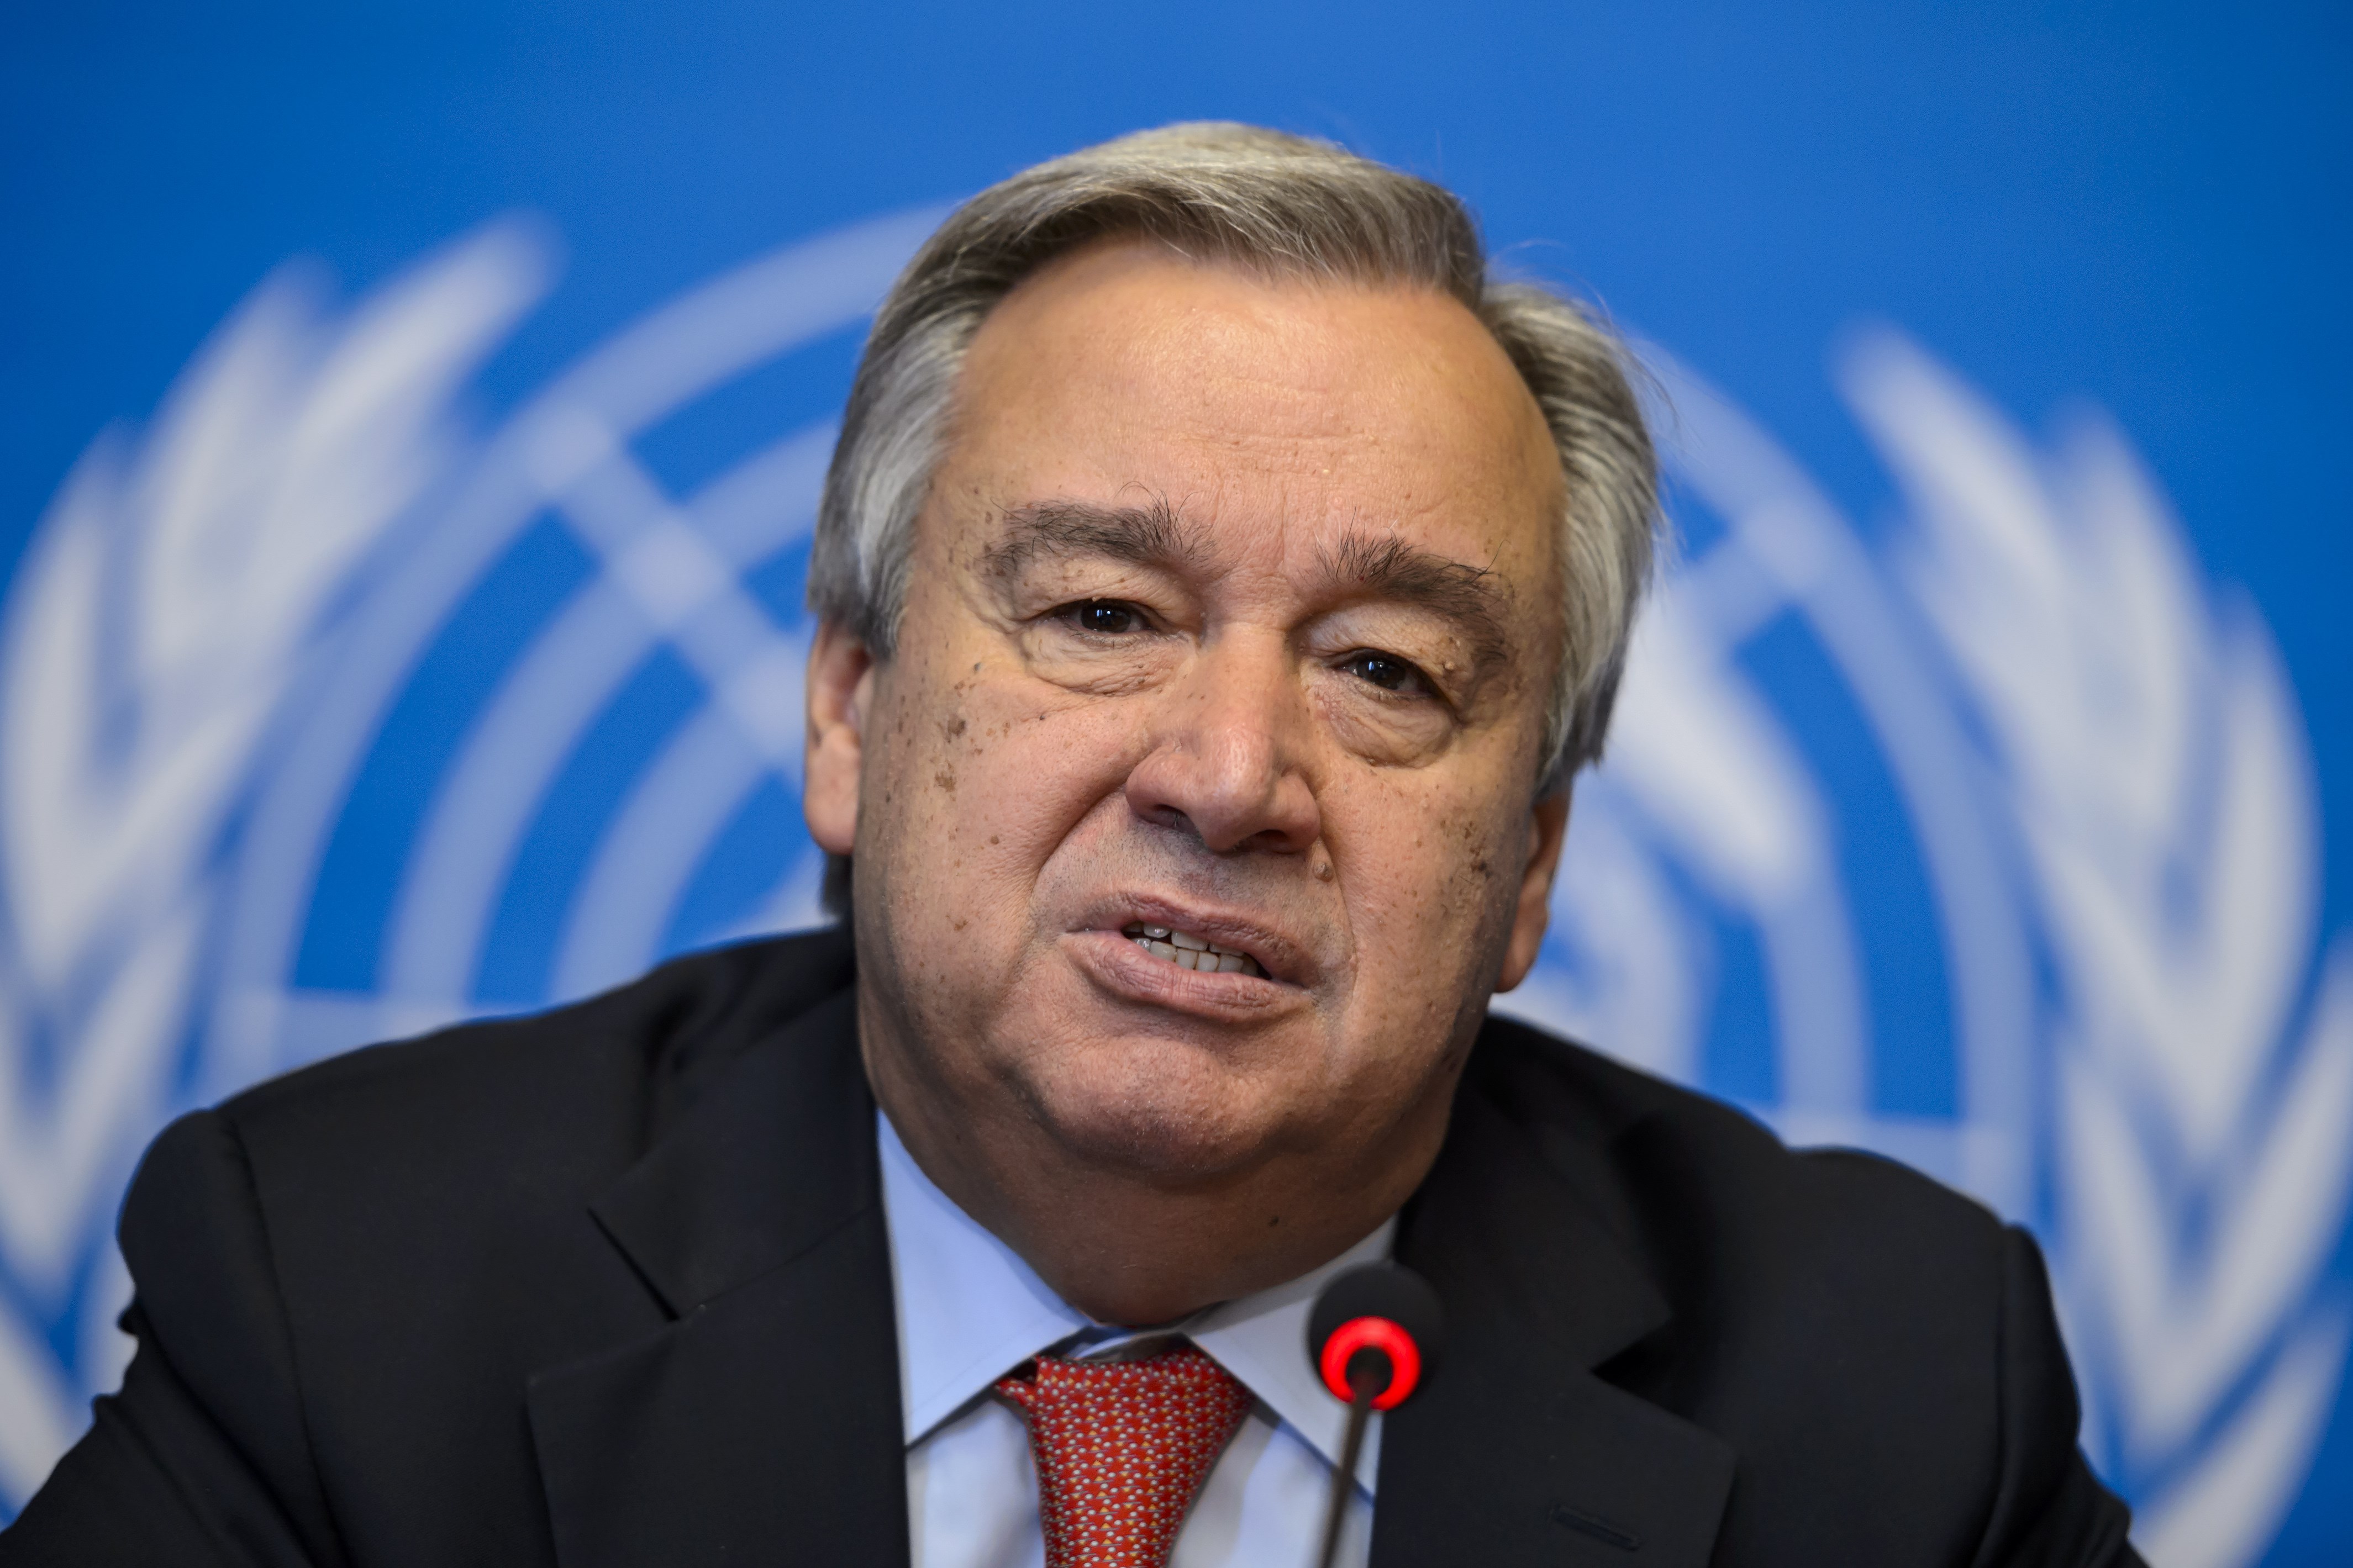 El socialdemócrata Guterres juró como nuevo Secretario General de la ONU